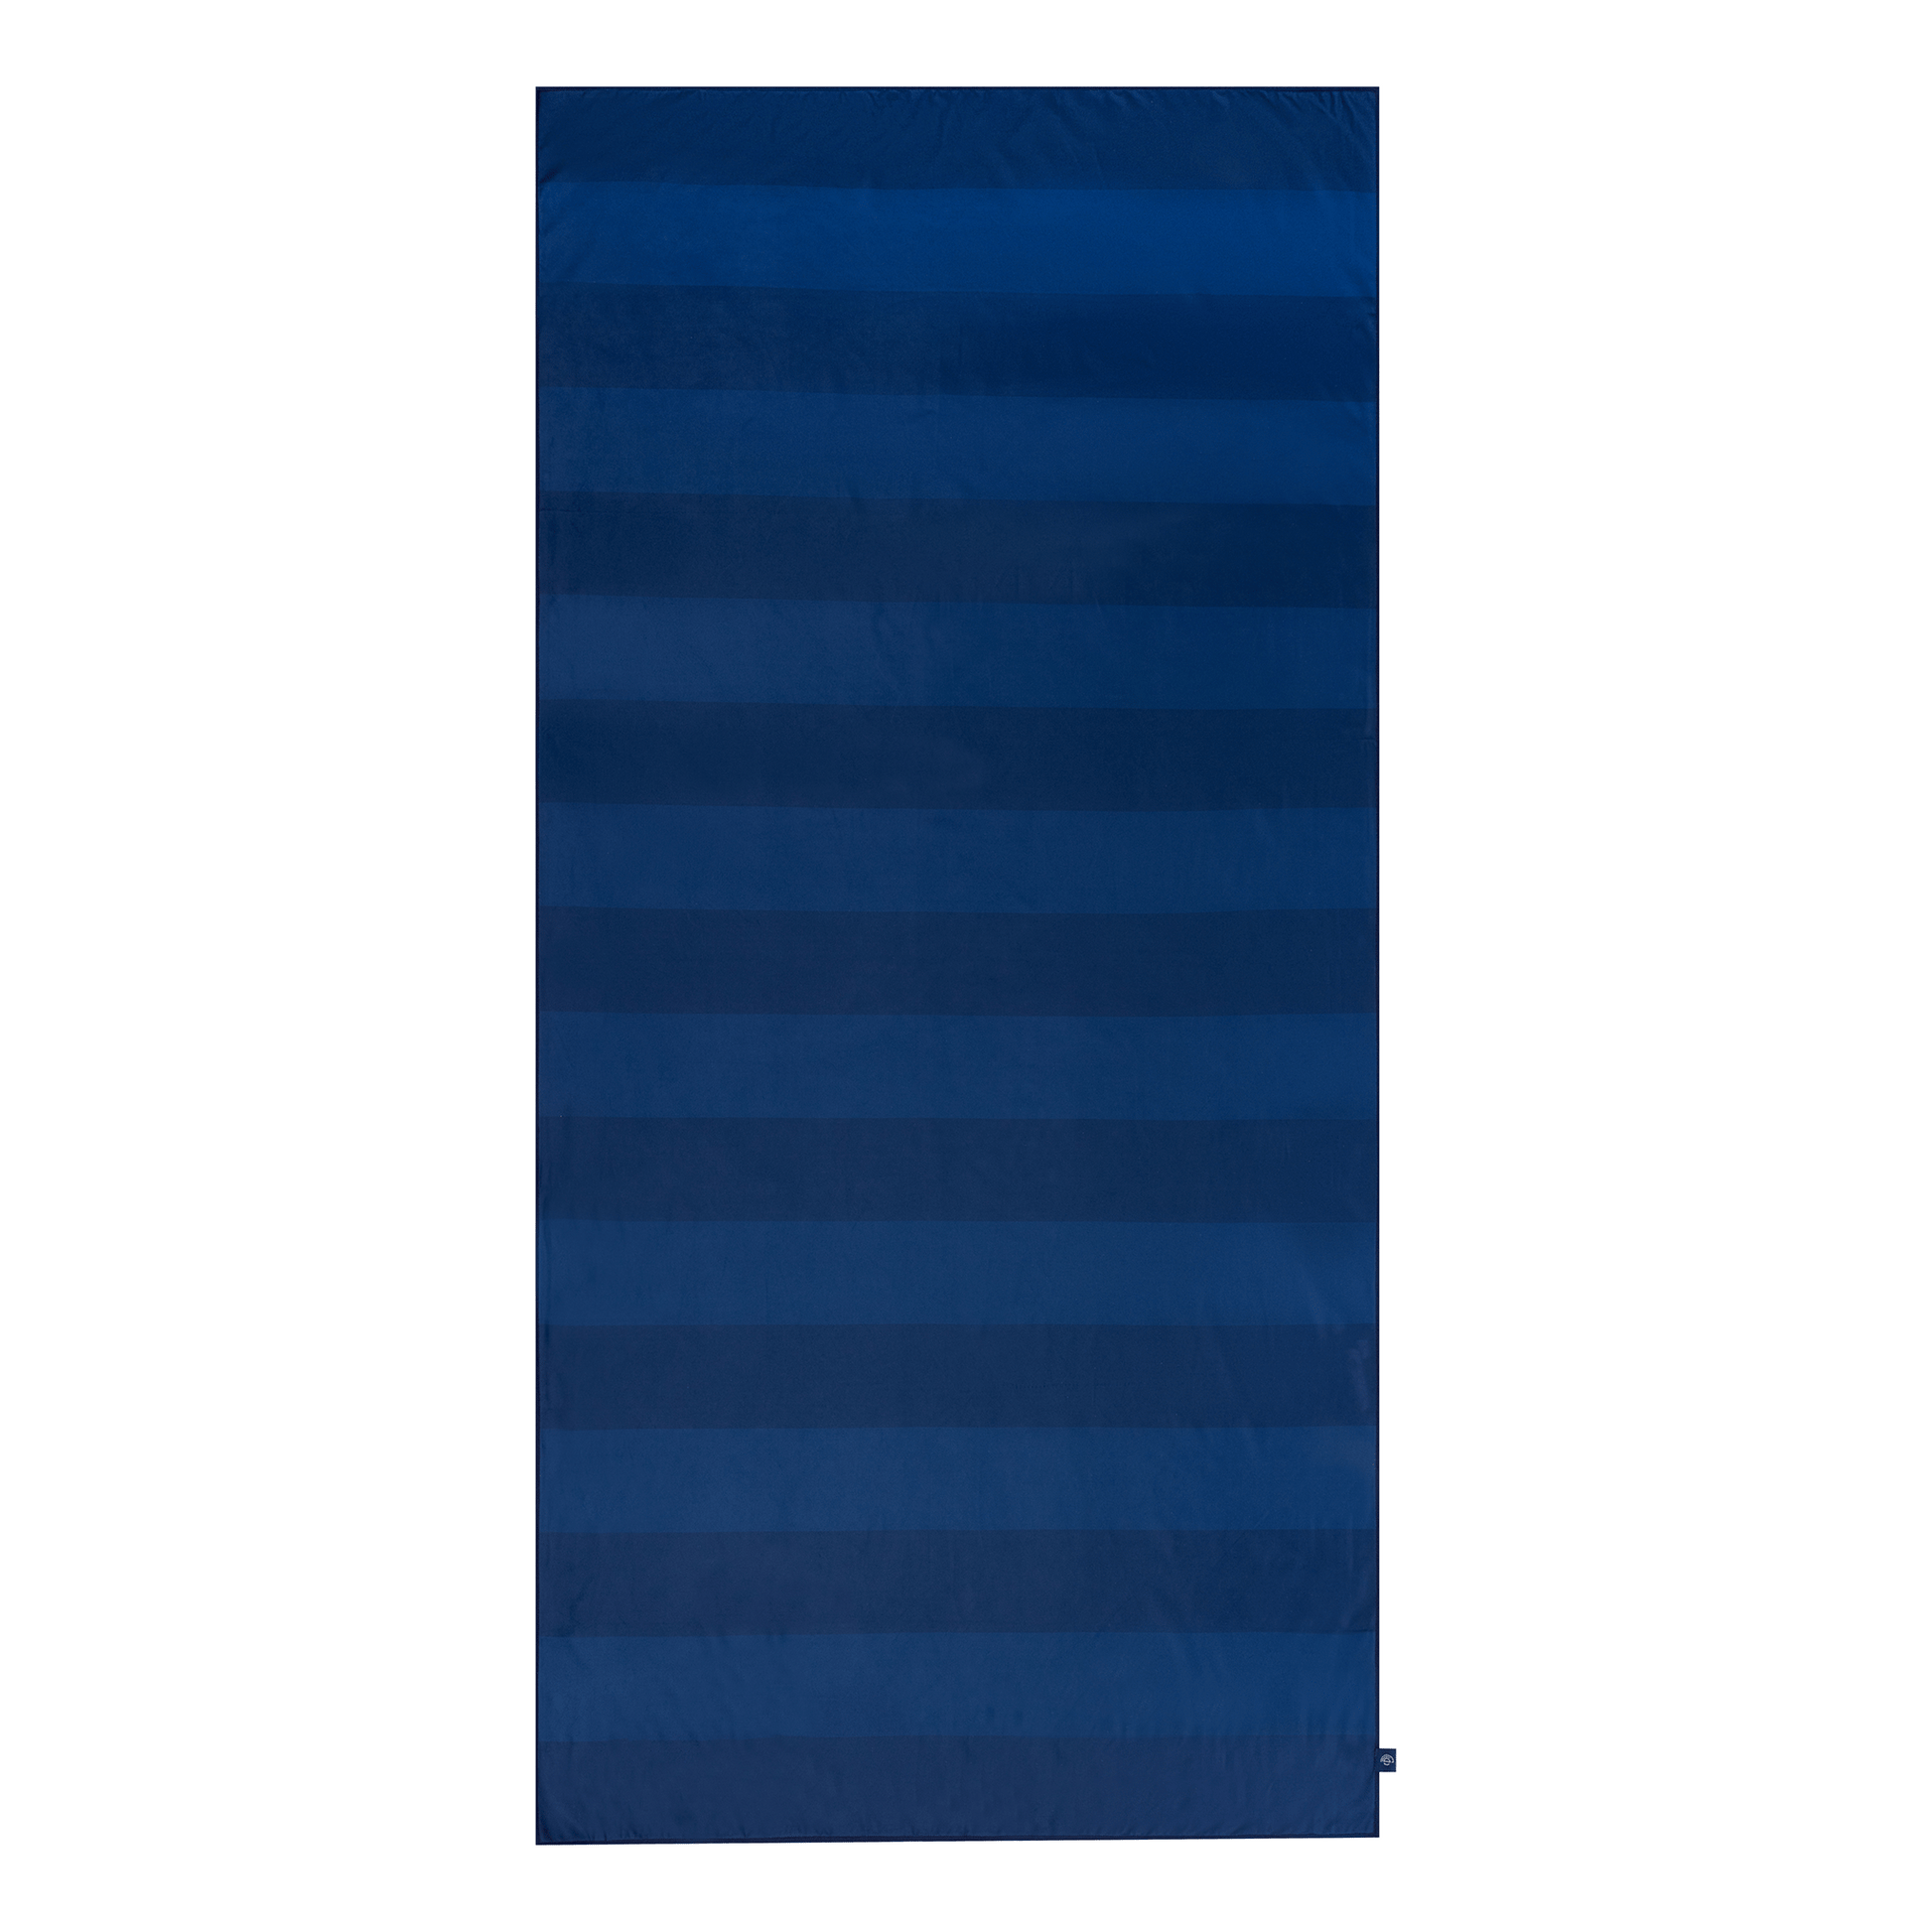 microvezel-handdoek-blauw-zebra-135x65-swim-essentials-2